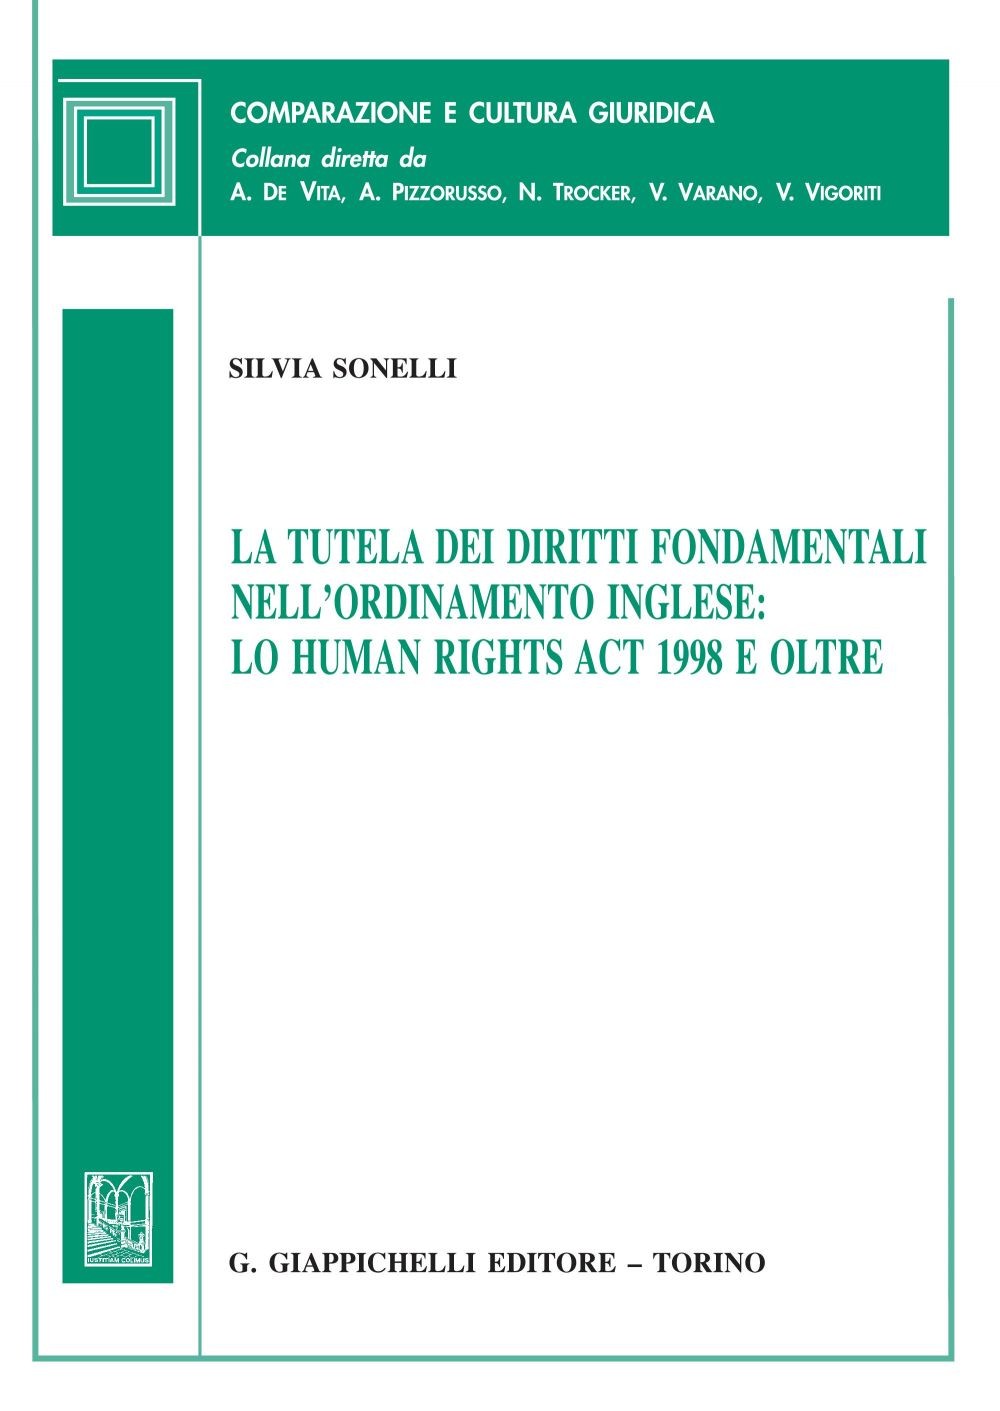 La tutela dei diritti fondamentali nell'ordinamento inglese: lo Human Rights Act 1998 e oltre - e-Book - Librerie.coop